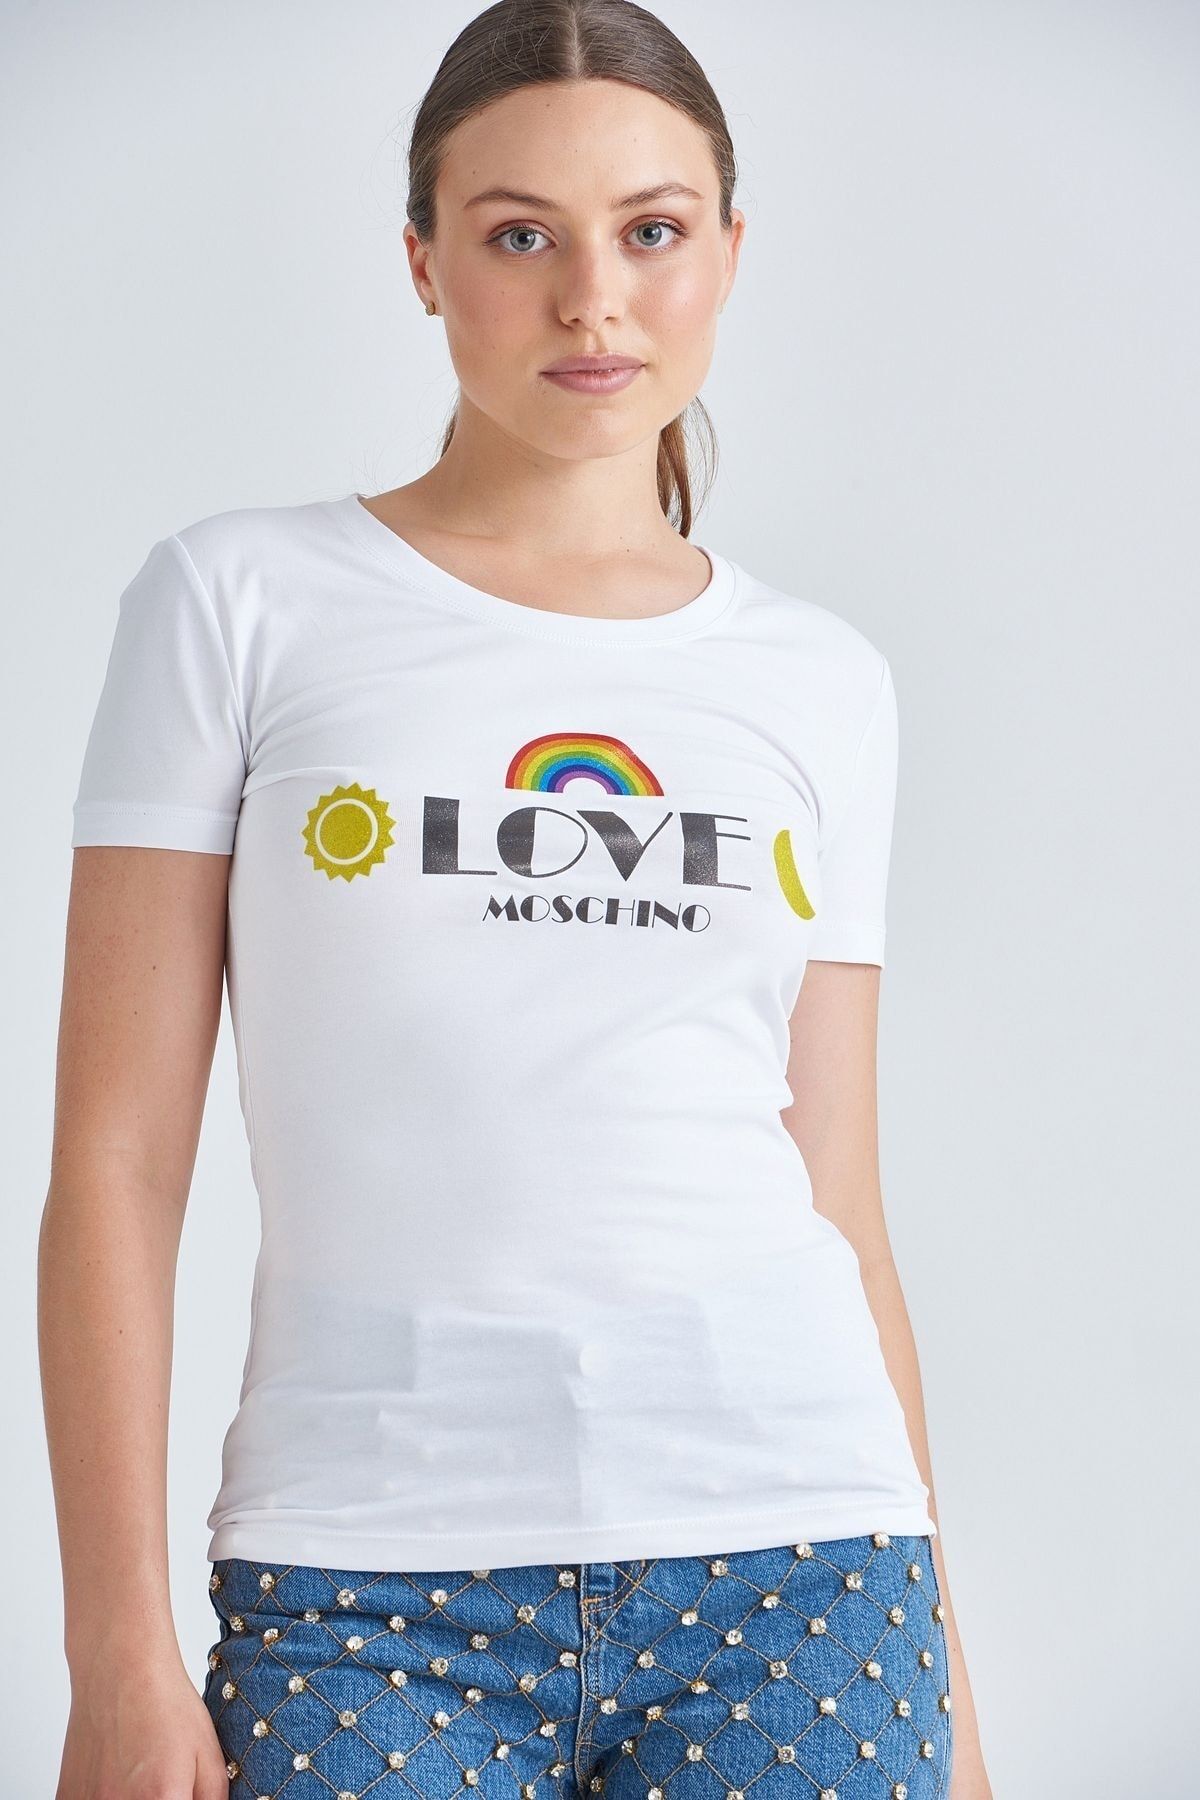 Moschino Kadın Bisiklet Yaka T-shirt